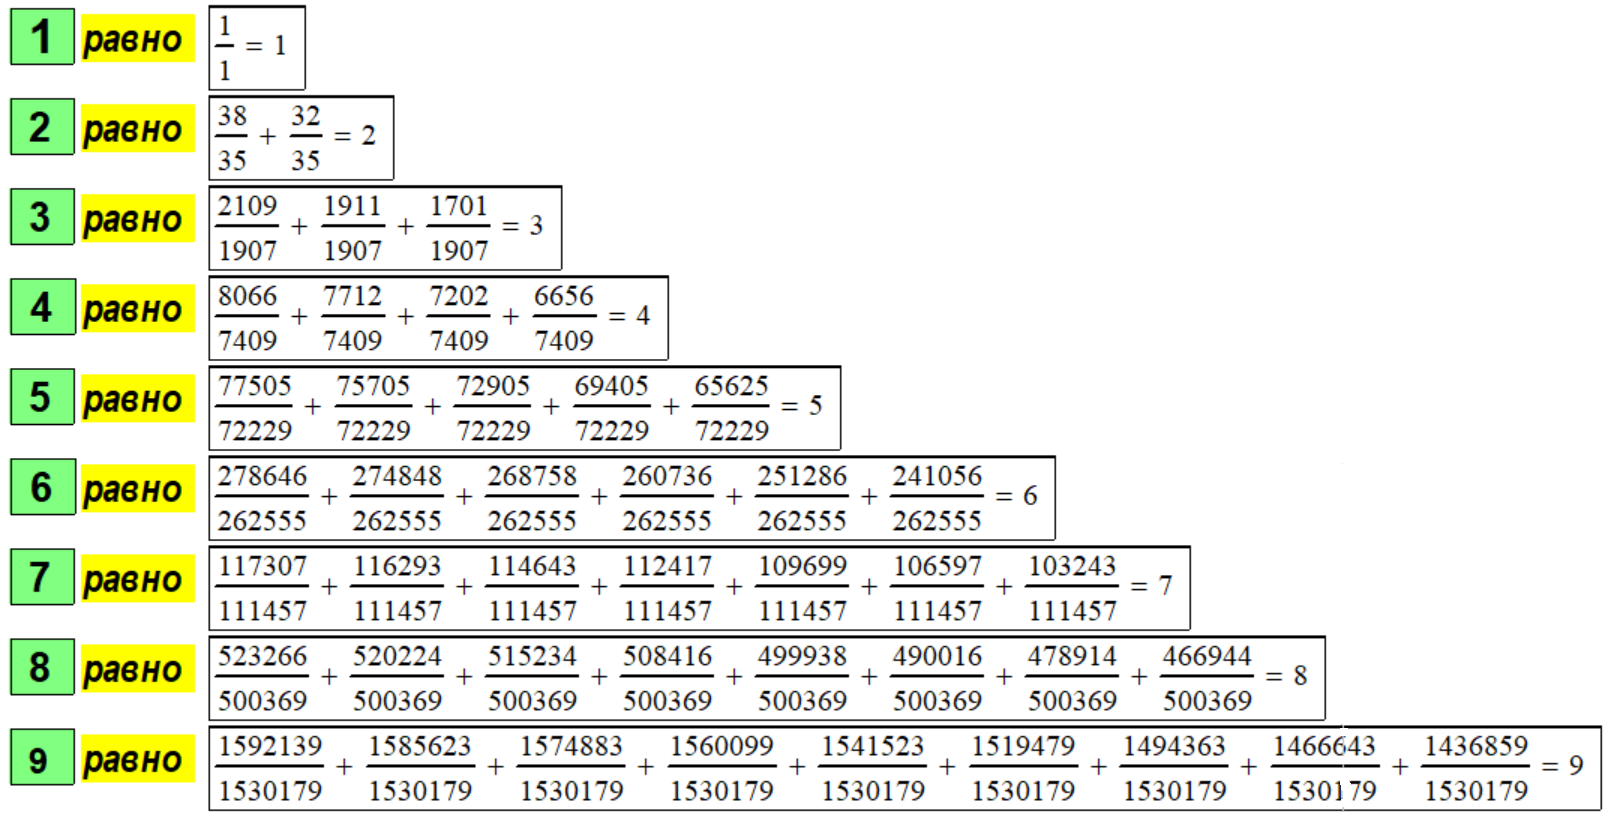 Таблица декомпозиции первых девяти натуральных чисел из оригинальных расчётов в системе Mathcad по Методу № 3.